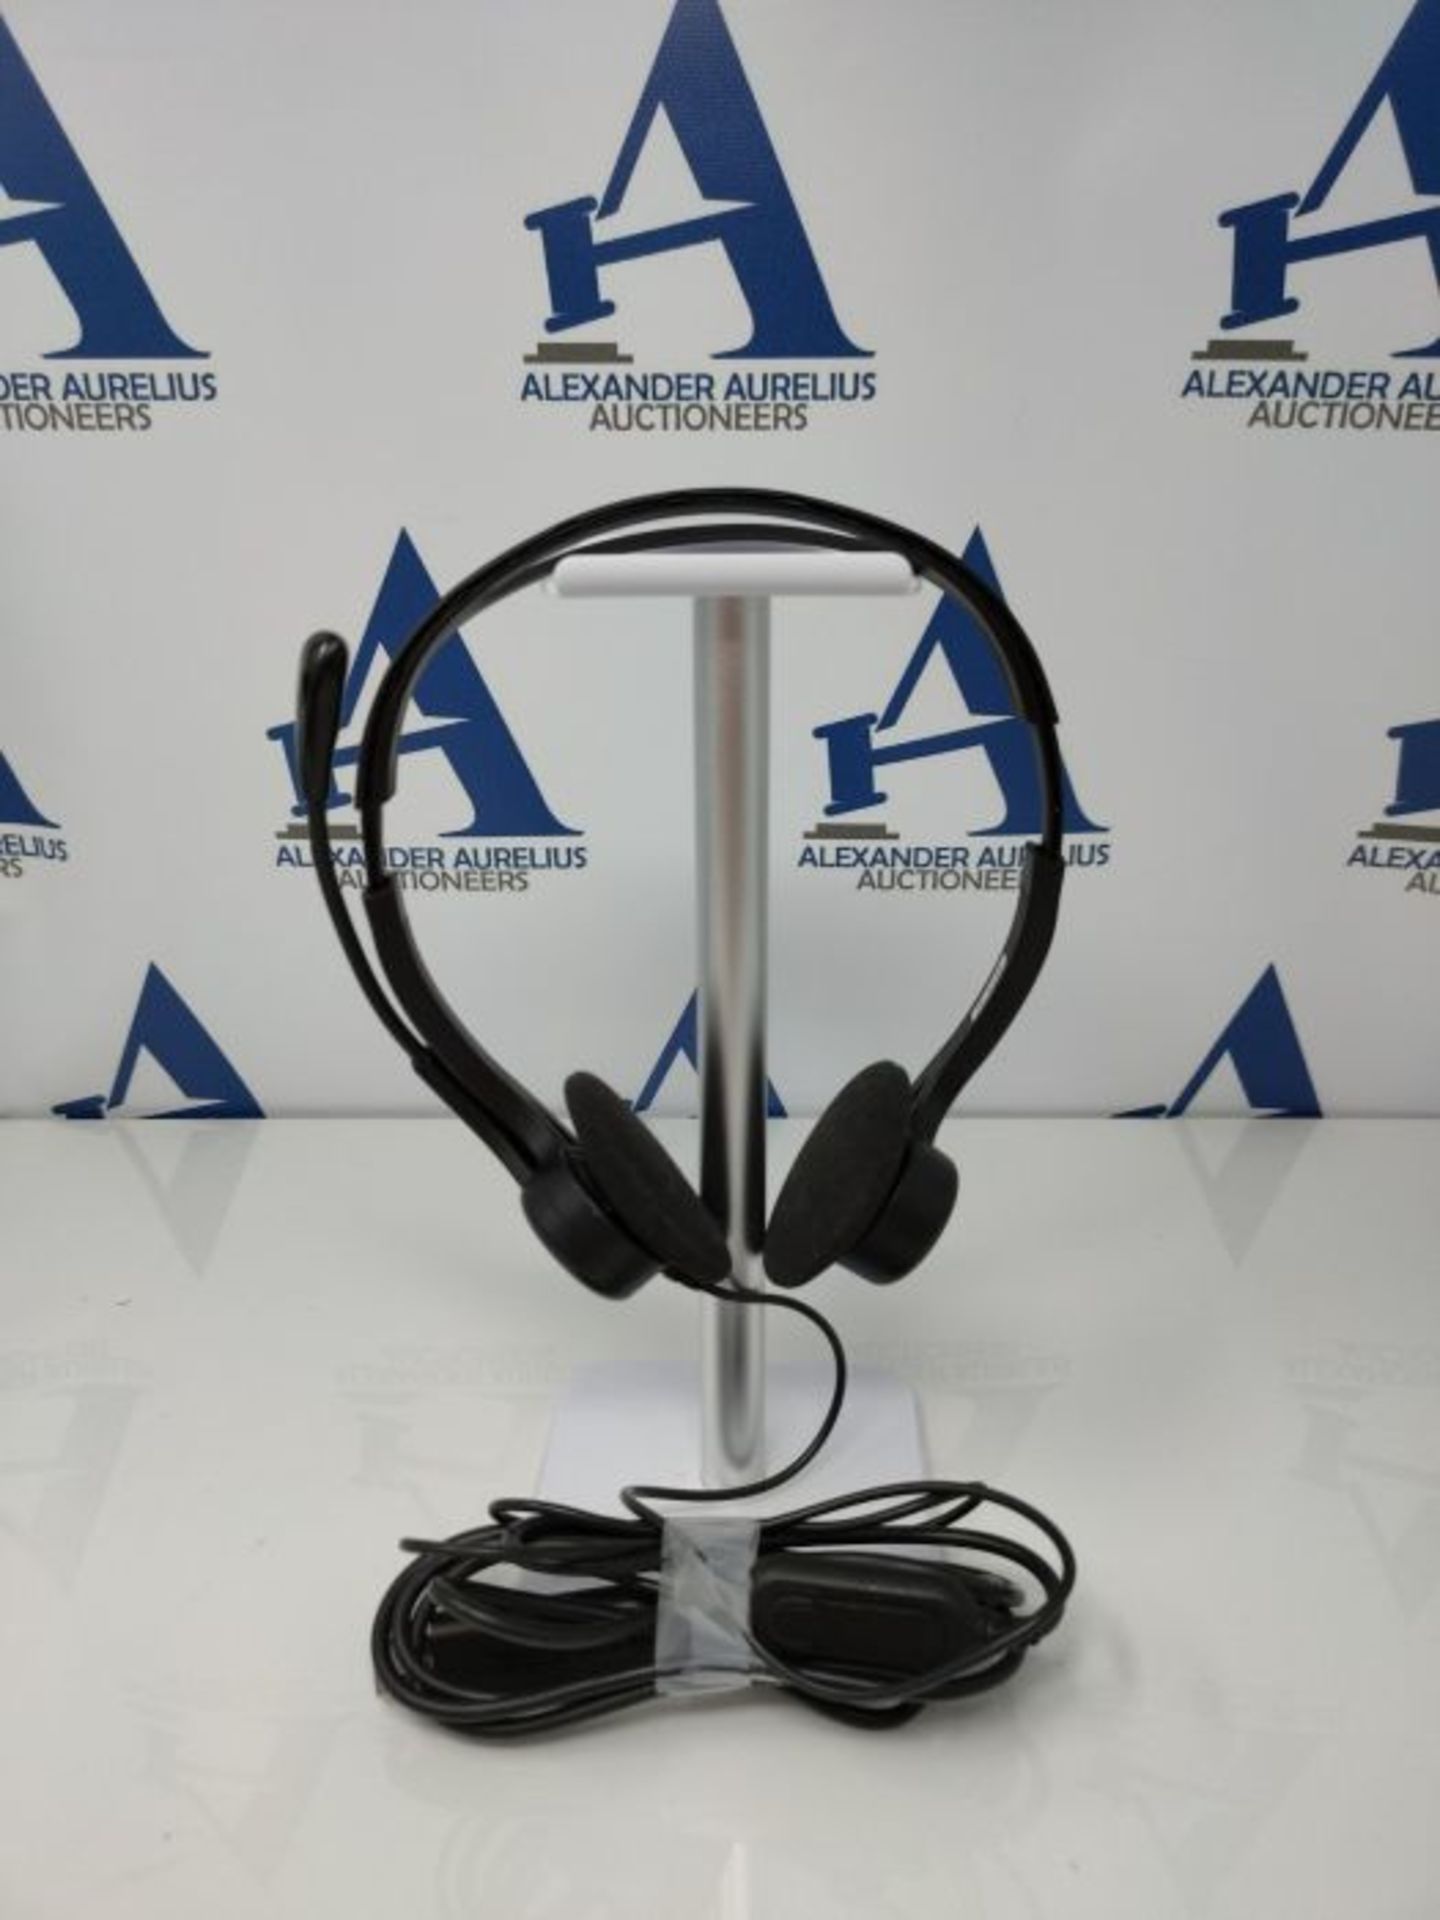 Logitech 960 Kopfhörer mit Mikrofon, Stereo-Headset, Verstellbares Mikrofon mit Rausc - Image 2 of 2